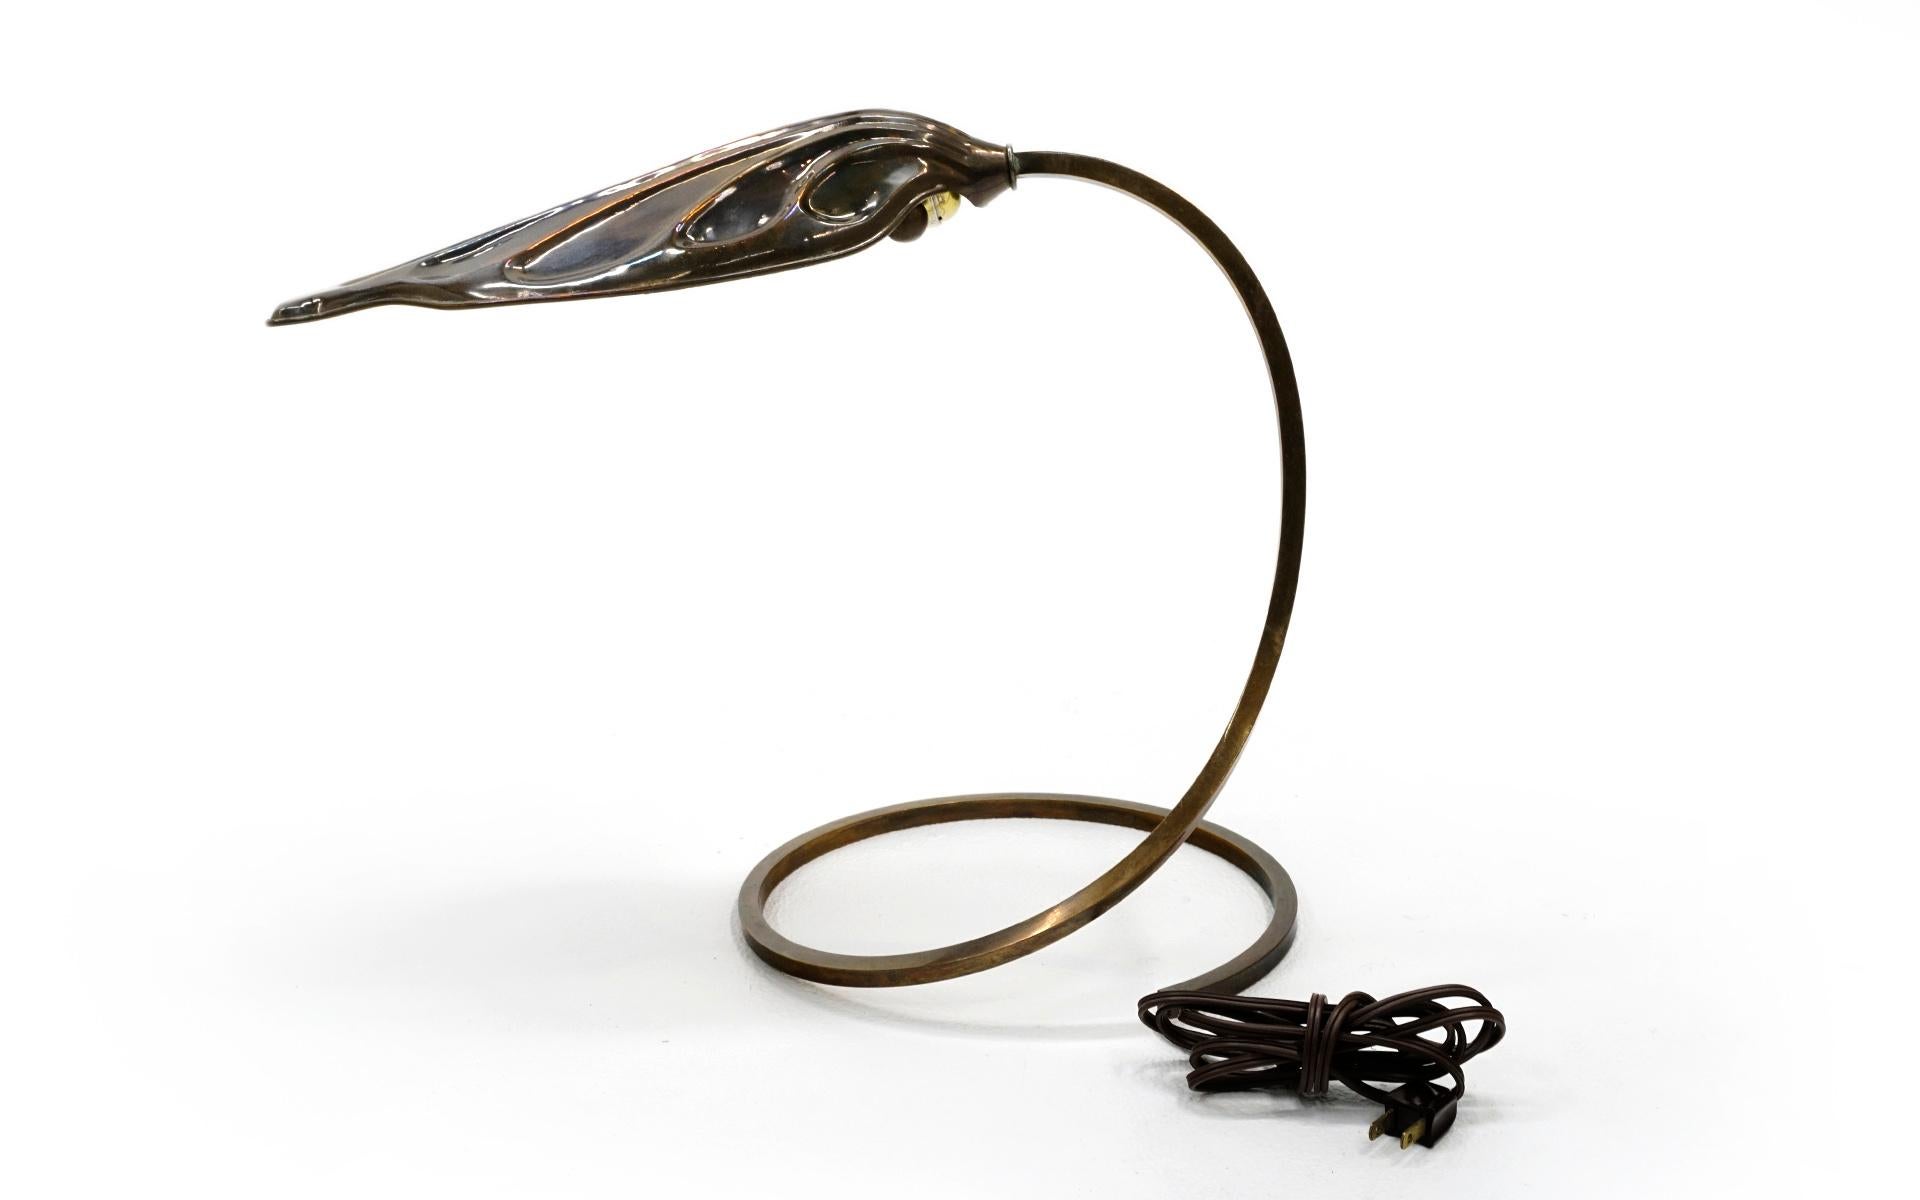 Tischlampe aus Messing, entworfen von Tommaso Barbi, um 1970. Rhubard-Blattmuster mit spiralförmigem Stiel auf runder Basis. Wunderschön patiniertes Messing. Wenn man will, kann man sie auf Hochglanz polieren.